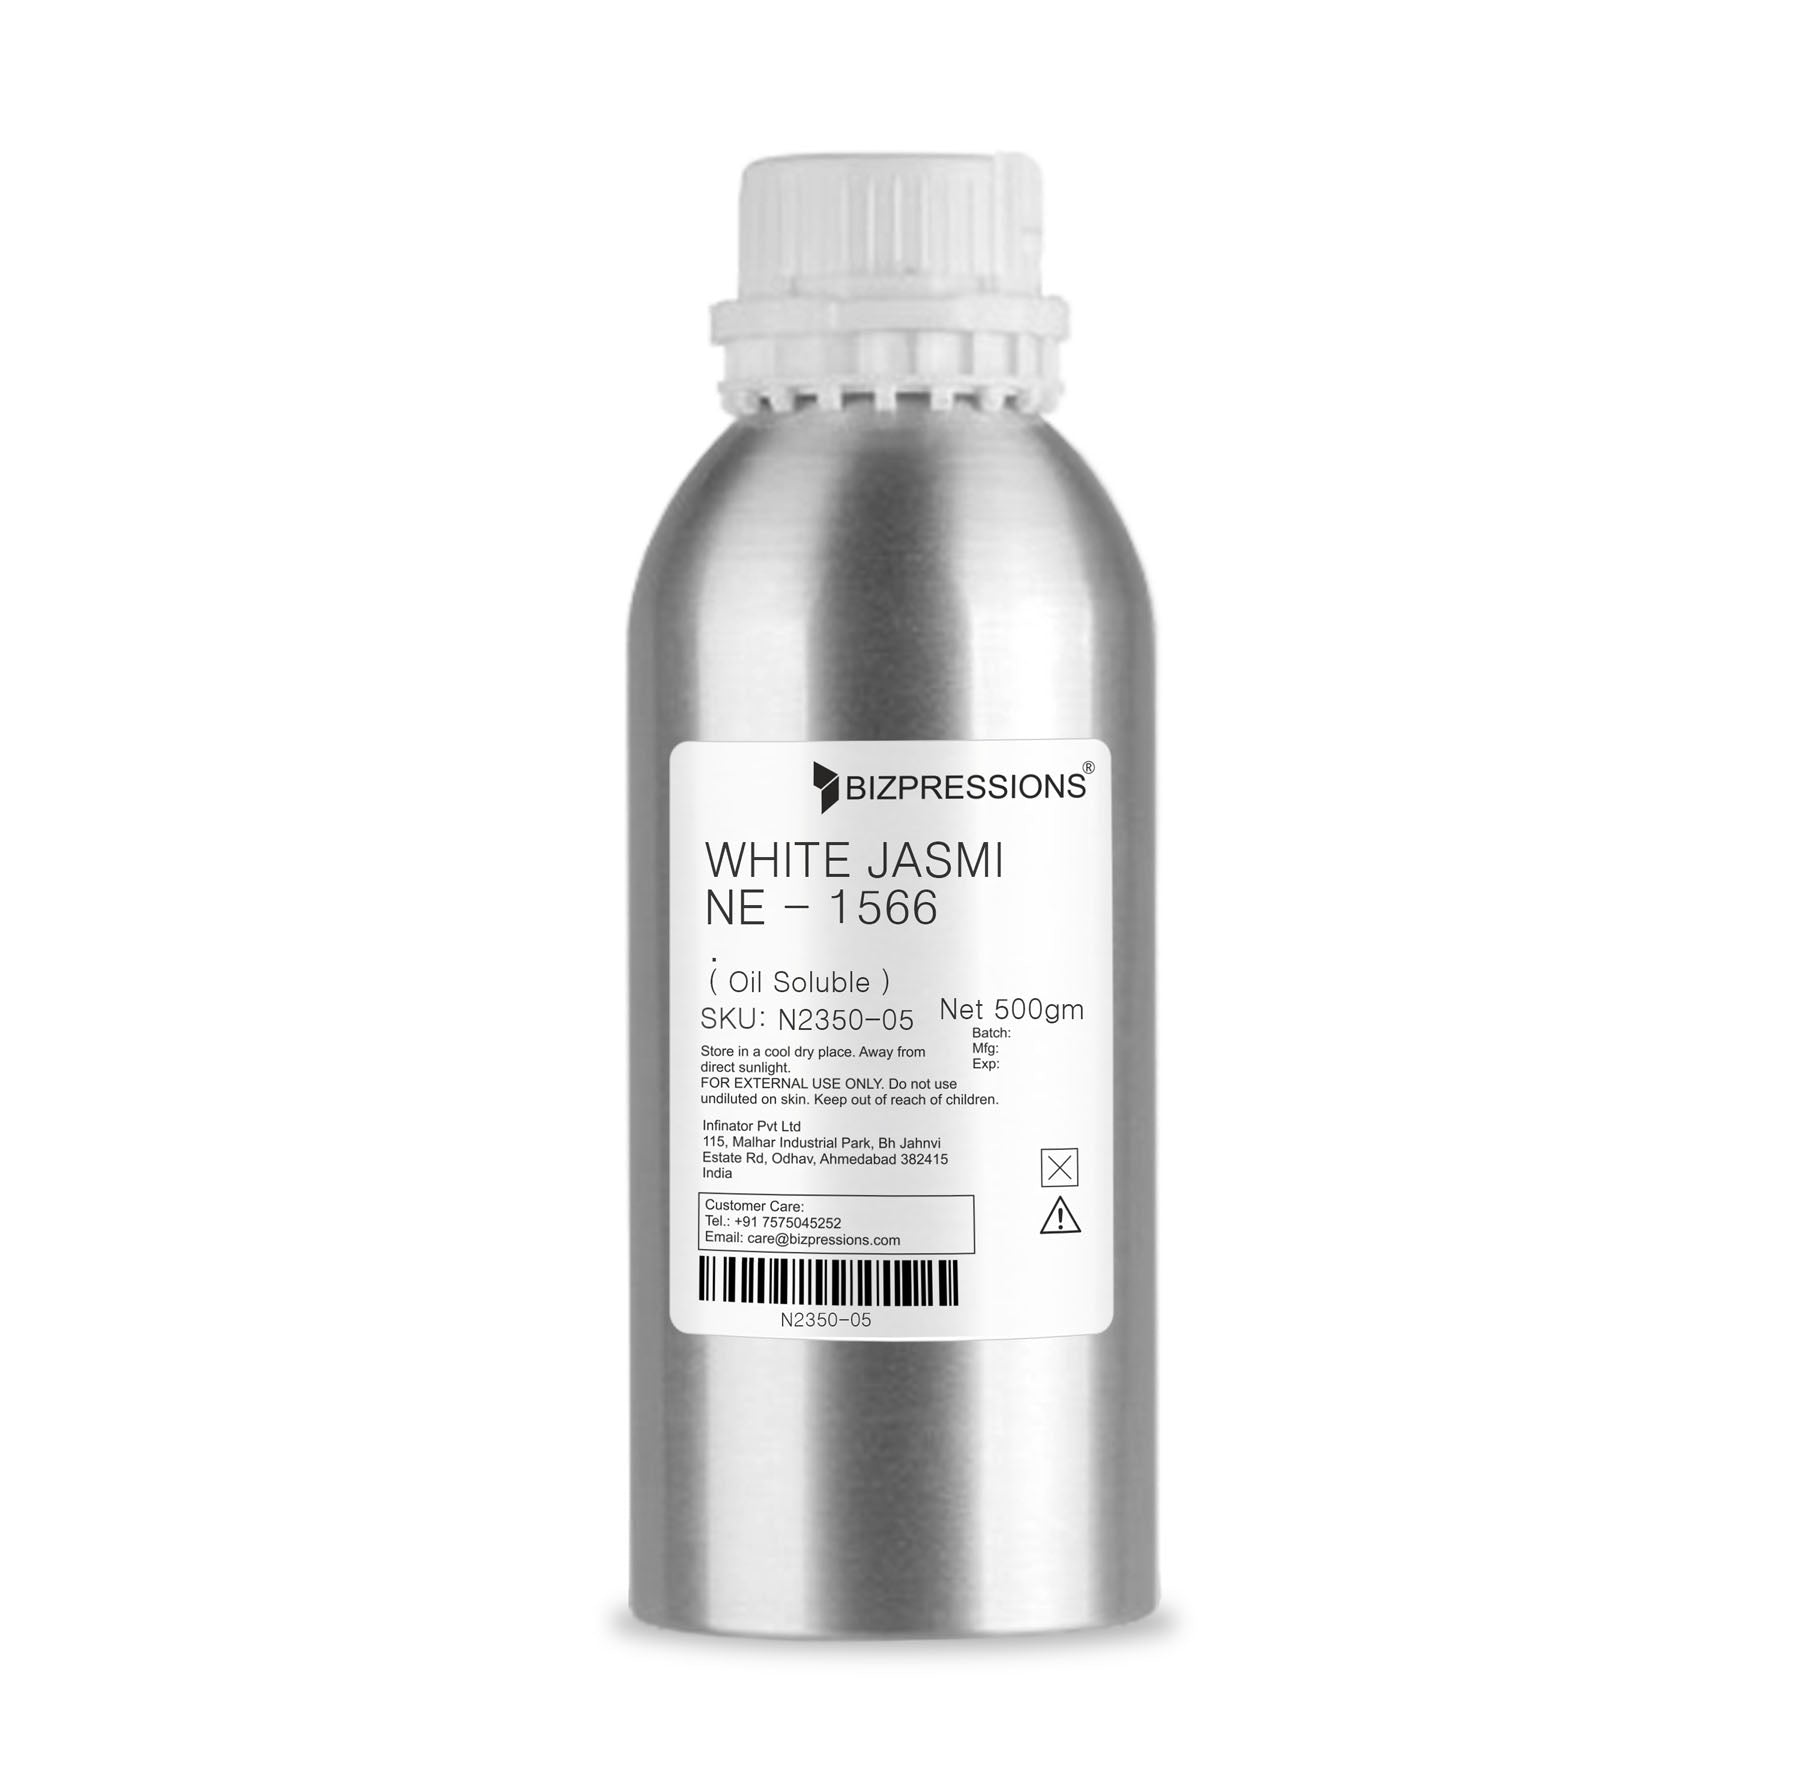 WHITE JASMINE - 1566 - Fragrance ( Oil Soluble ) - 500 gm